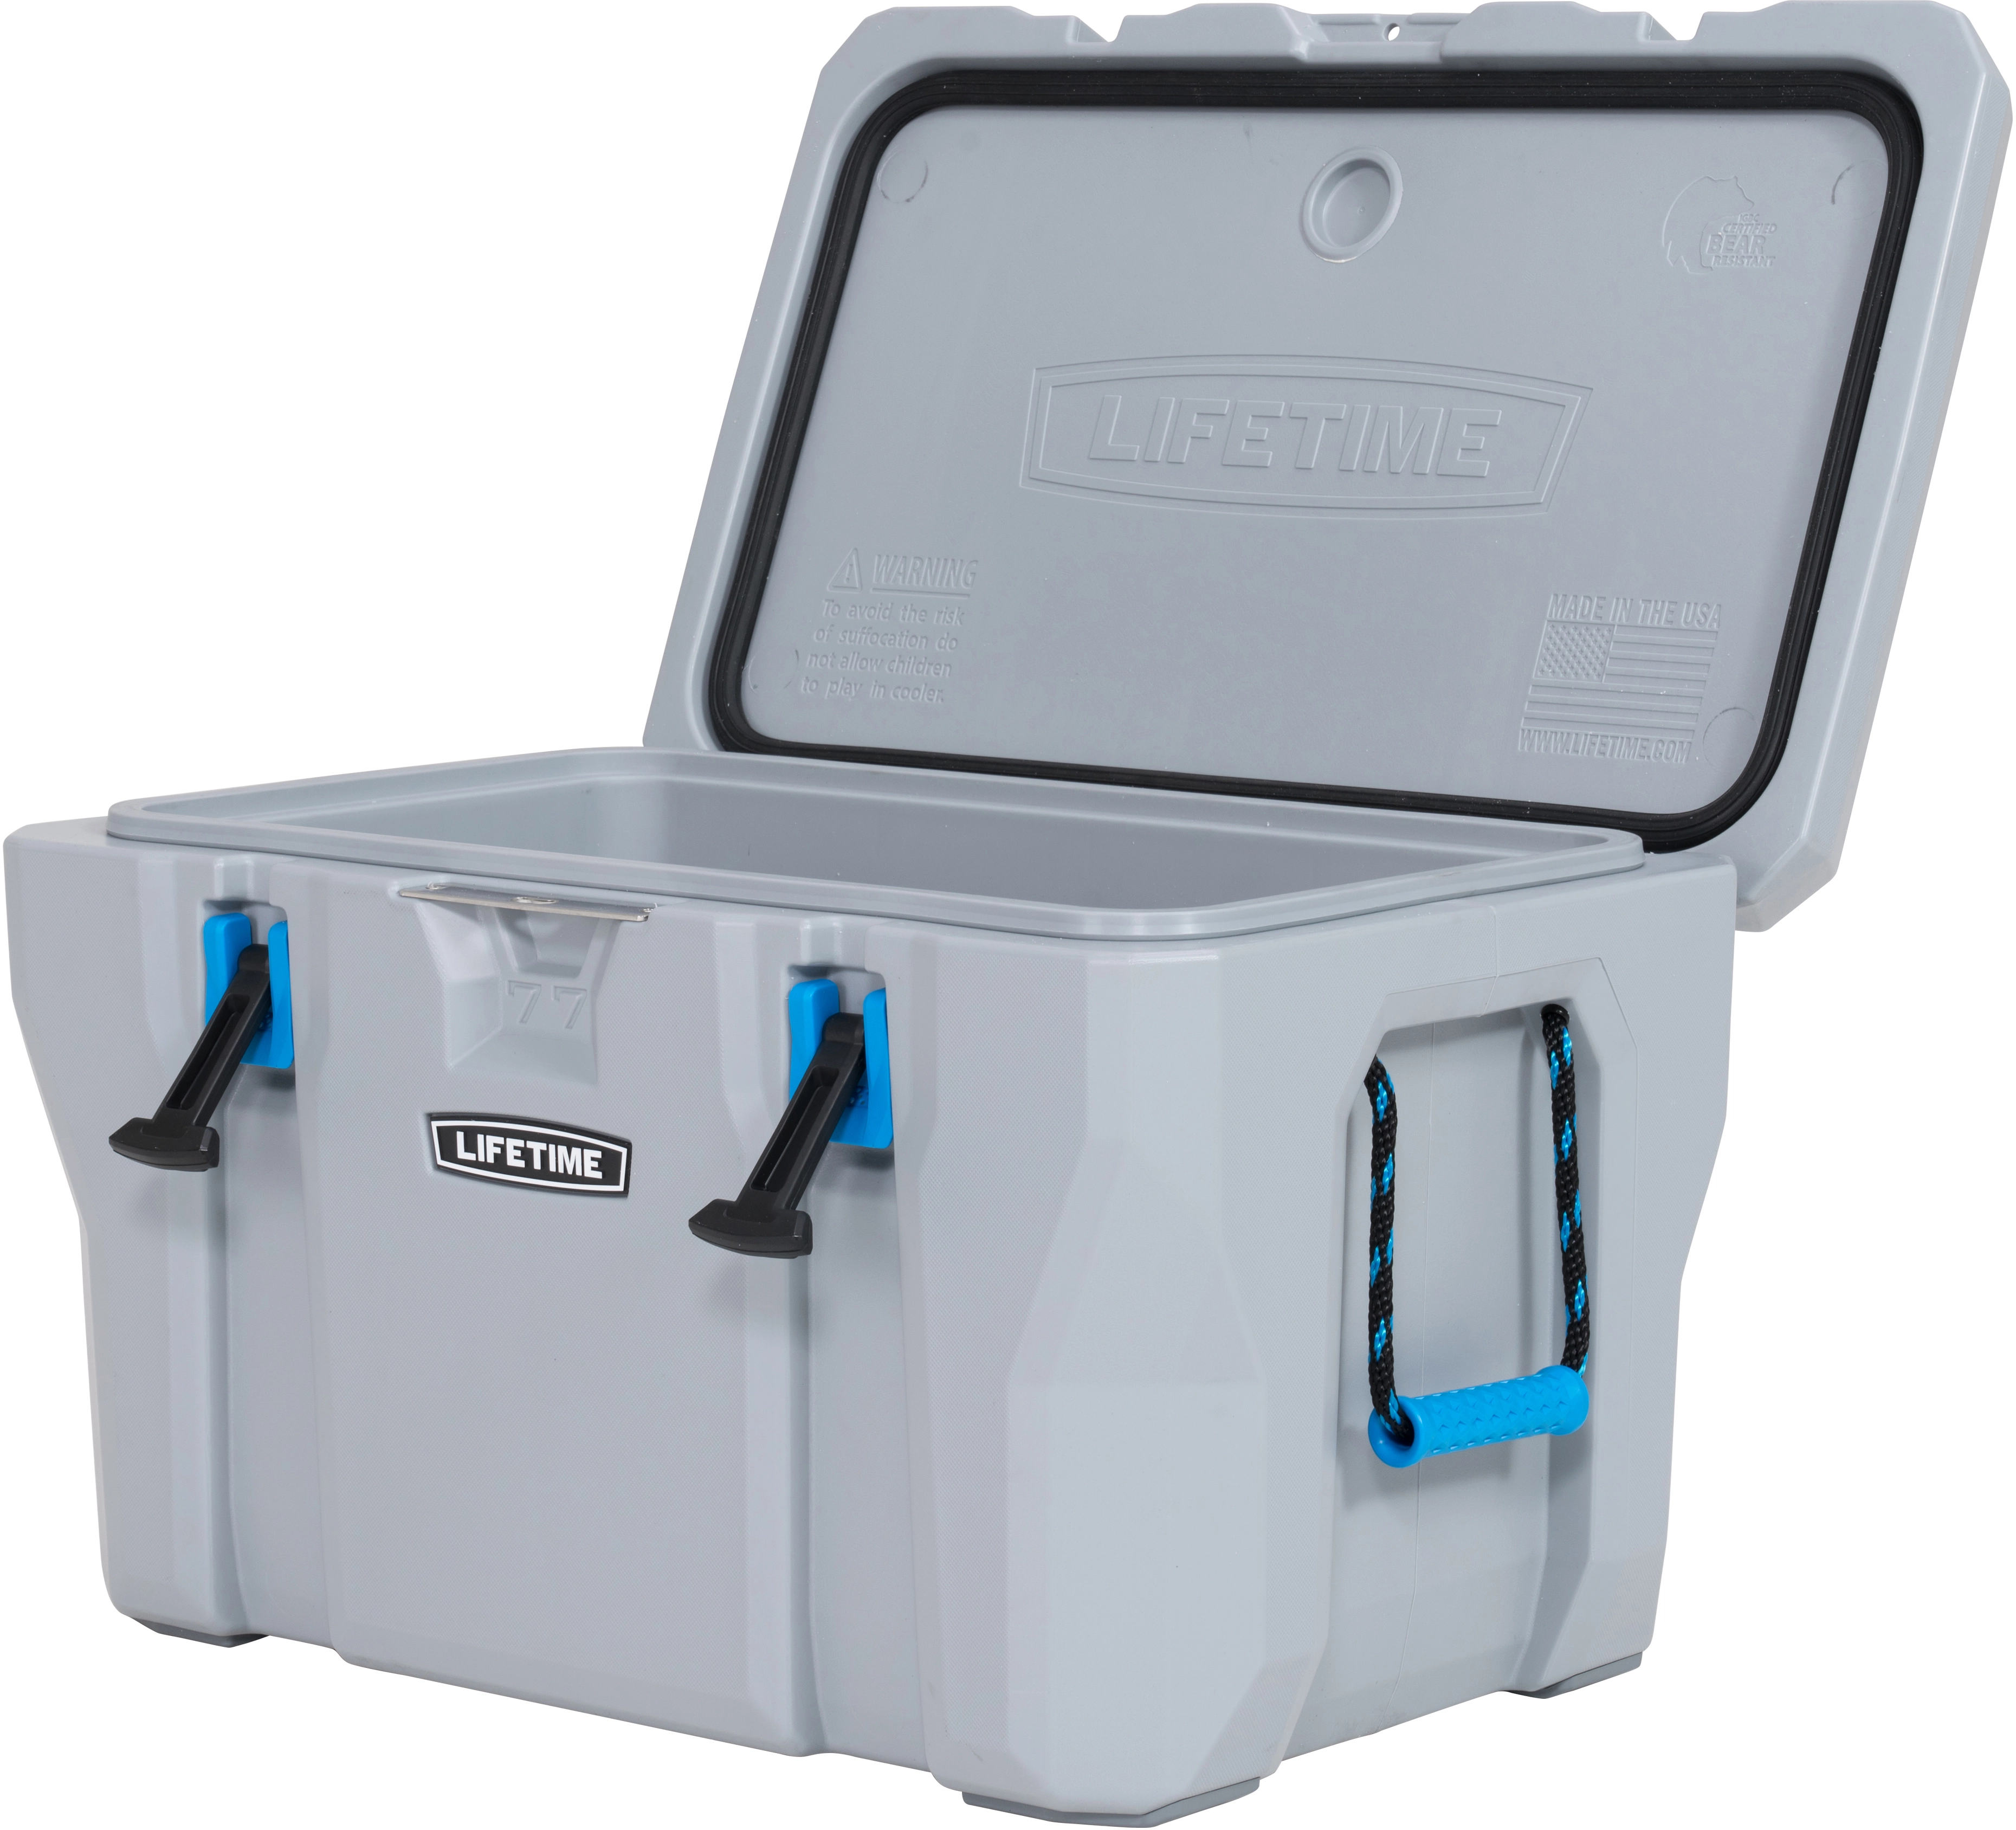 Lifetime Kühlbox Premium Campingbox Cooler Inkl. Tragegriffen 73 Liter  kaufen bei OBI